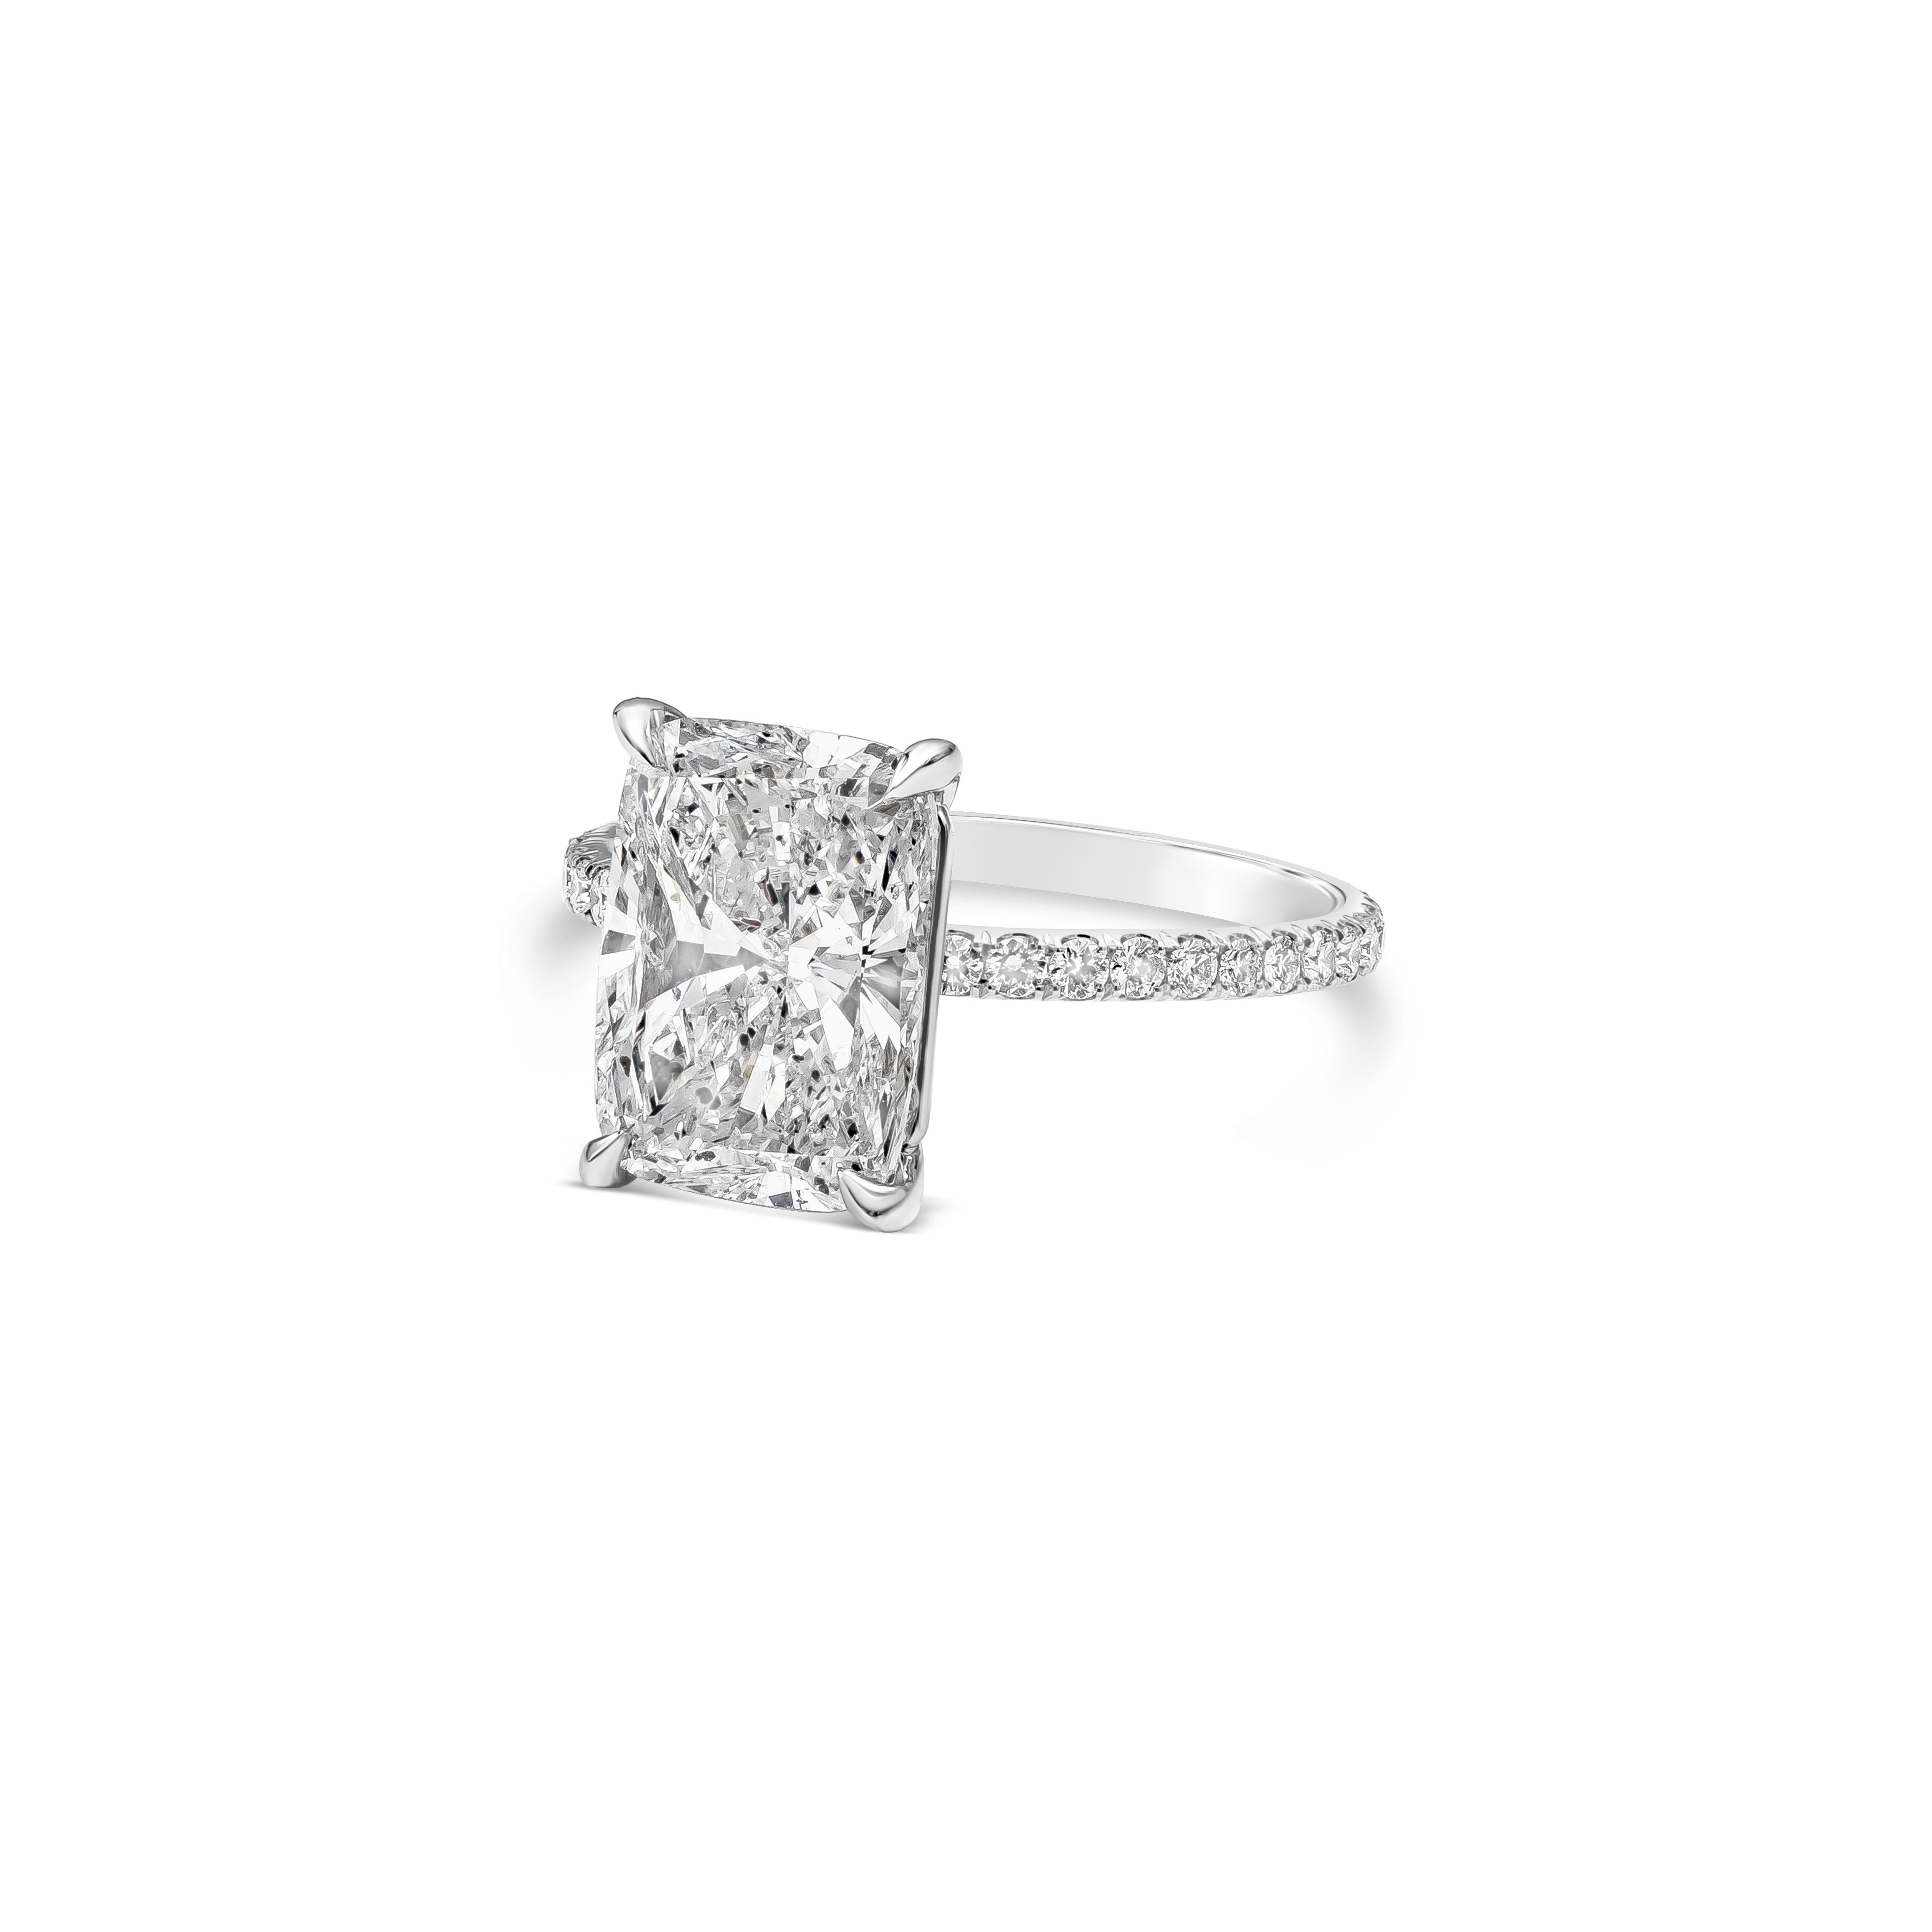 Ein klassisches und elegantes Schmuckstück mit einem GIA-zertifizierten 4,02-Karat-Diamanten im länglichen Kissenschliff, Farbe D und Reinheit I1. 28 runde Diamanten im Brillantschliff sind zu 3/4 in das Band eingelassen  etwa 0,32 Karat insgesamt,